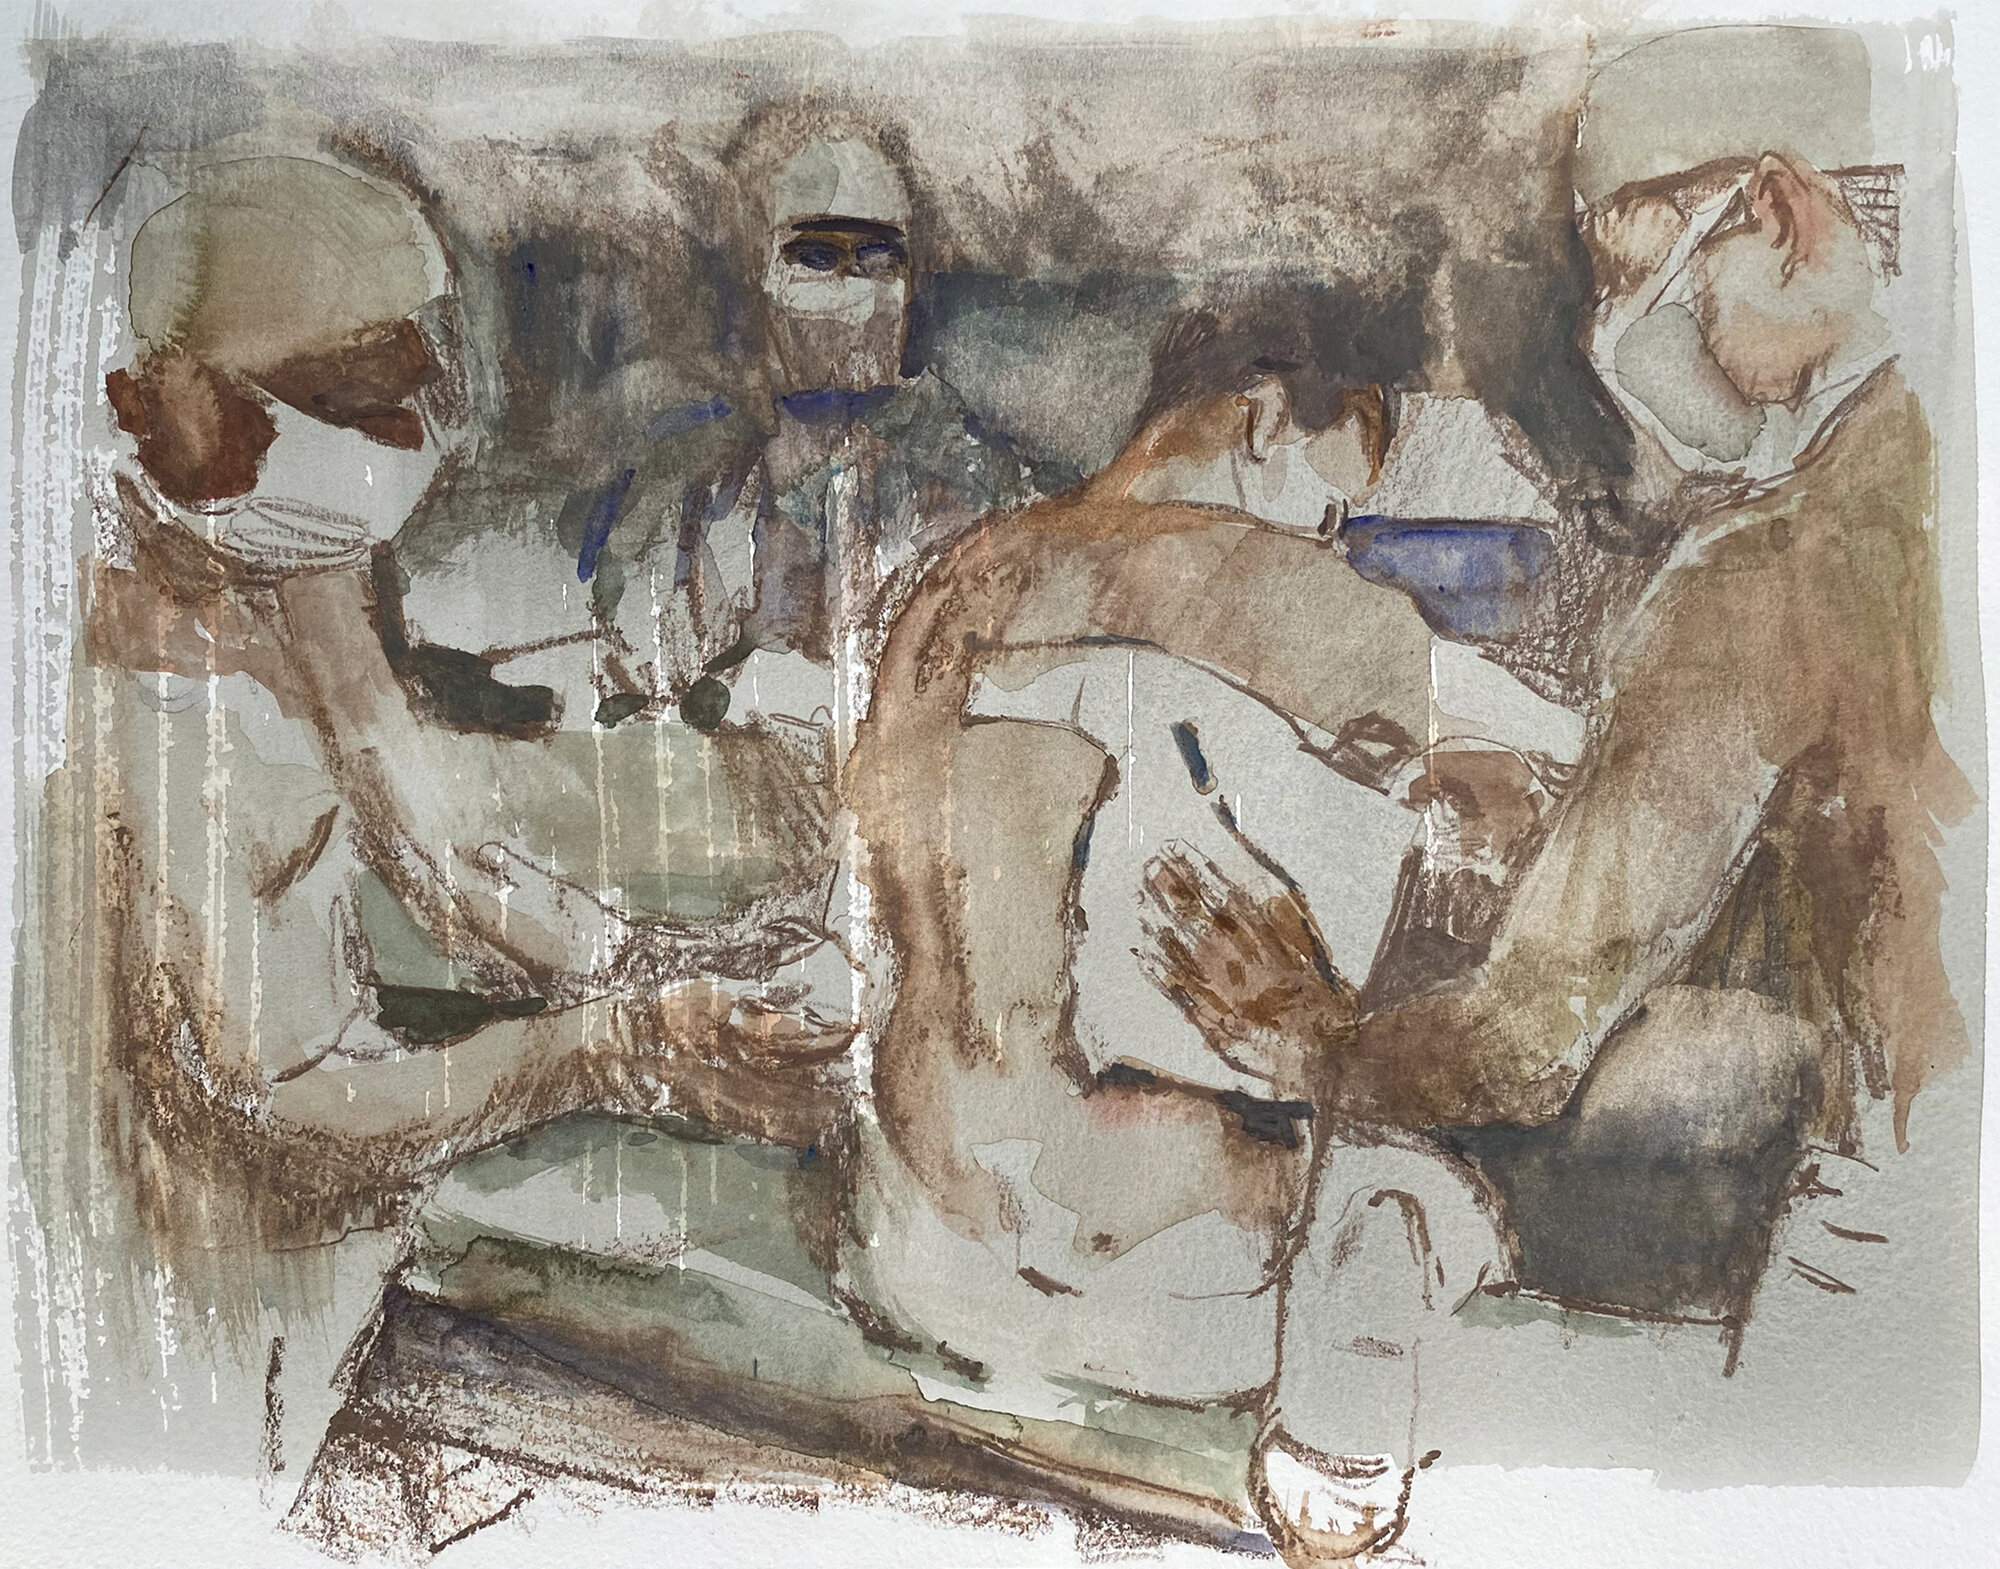 Field hospital (version III), watercolor, 2020